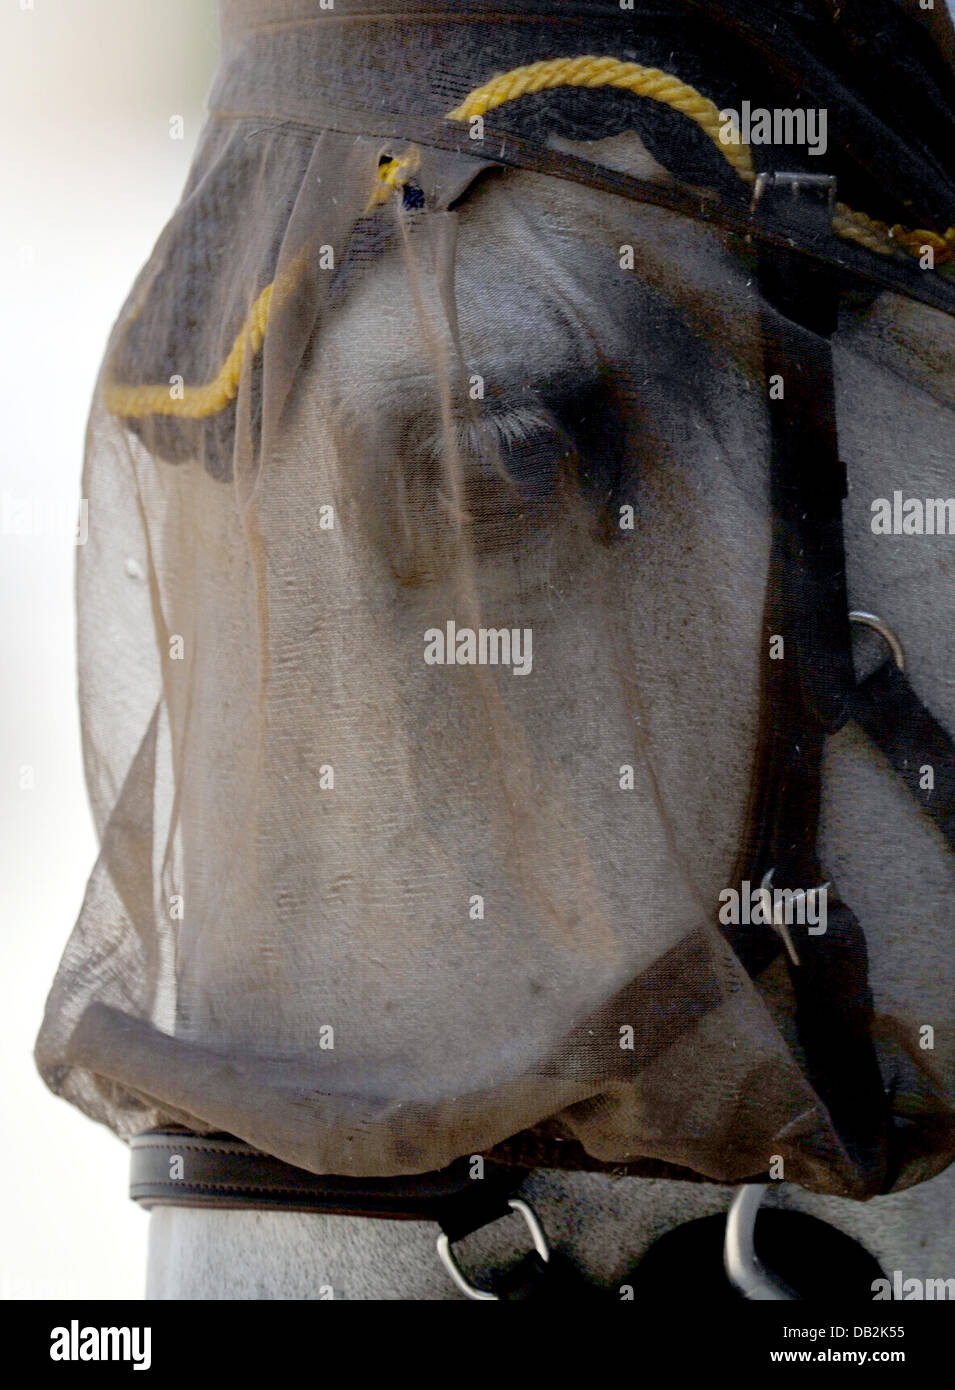 Ein Pferd hat zum Schutz vor Fliegen am Mittwoch (14.09.2011) bei der Europameisterschaft der Springreiter in Madrid ein Netz auf dem Kopf. Foto: Jochen Lübke dpa Stock Photo